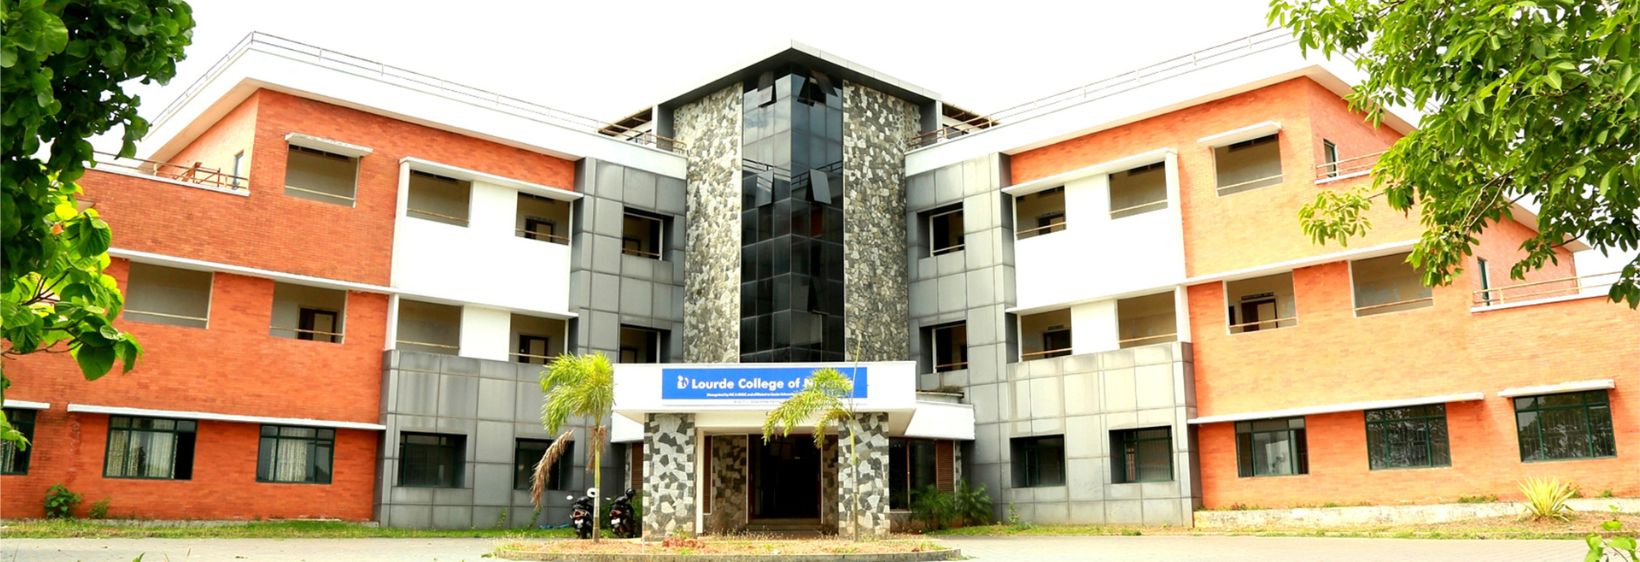 Lourde College of Nursing -  Kannur